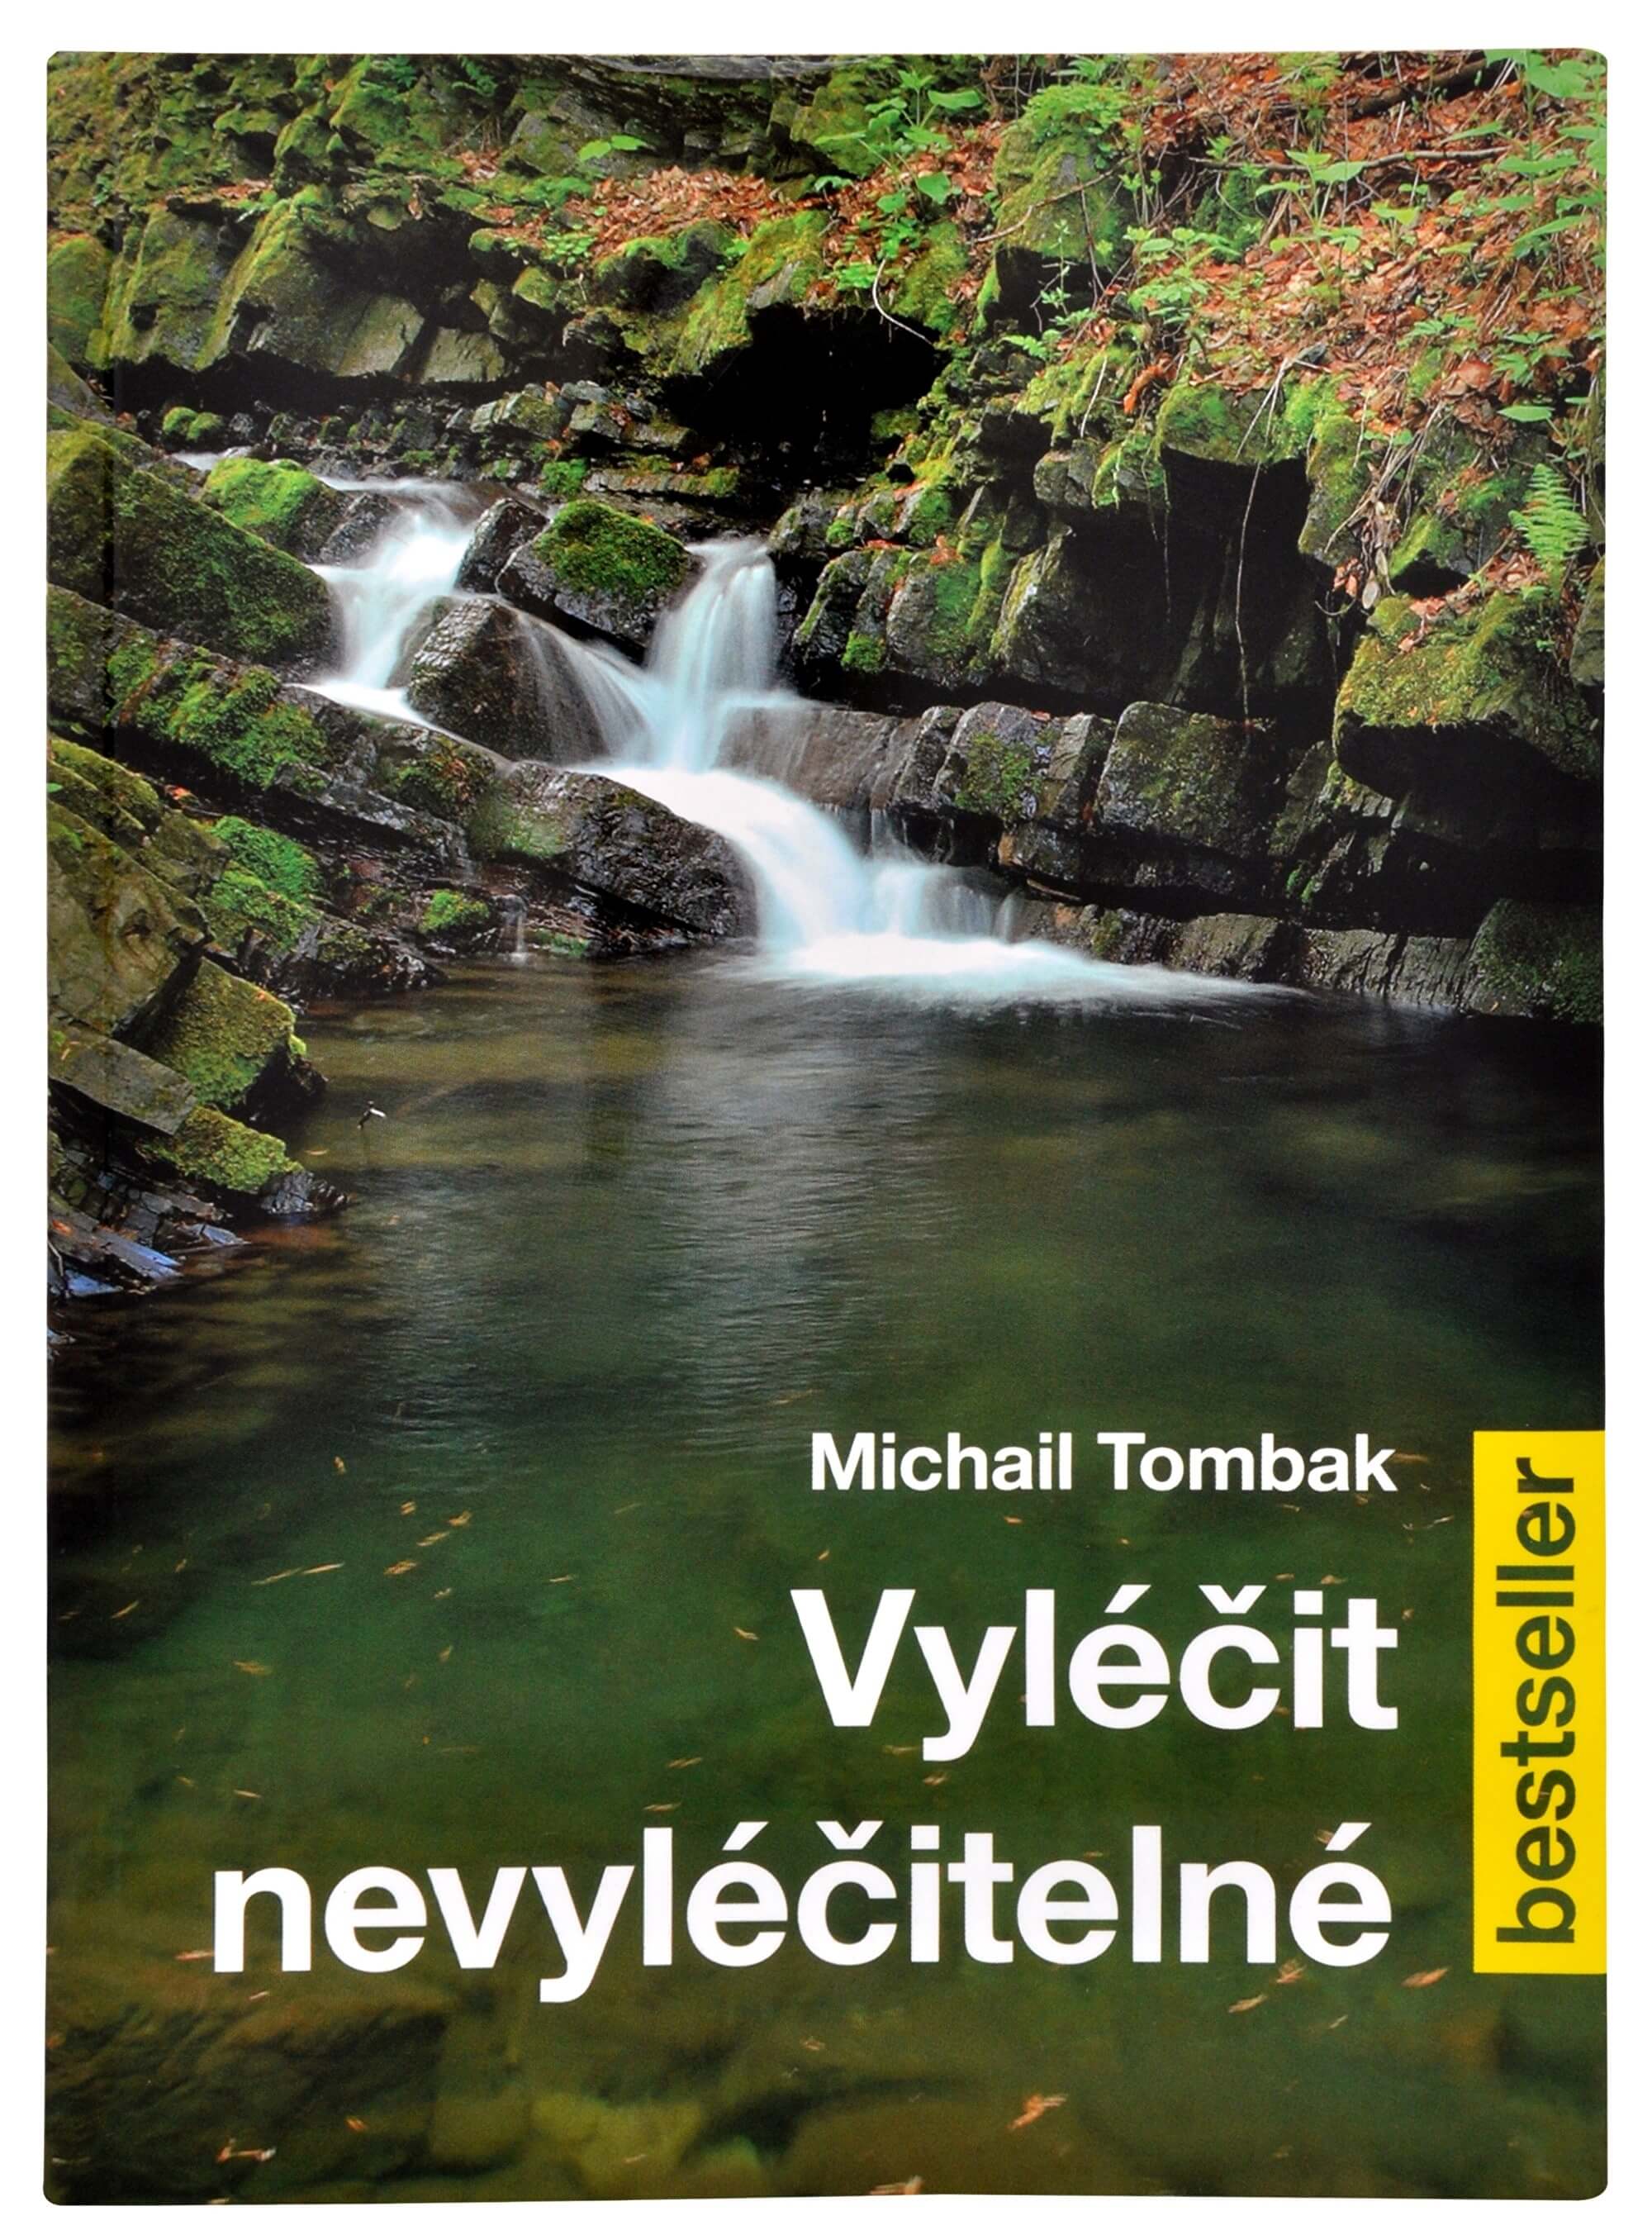 Knihy Vyléčit nevyléčitelné (Prof. Michail Tombak, PhDr.)